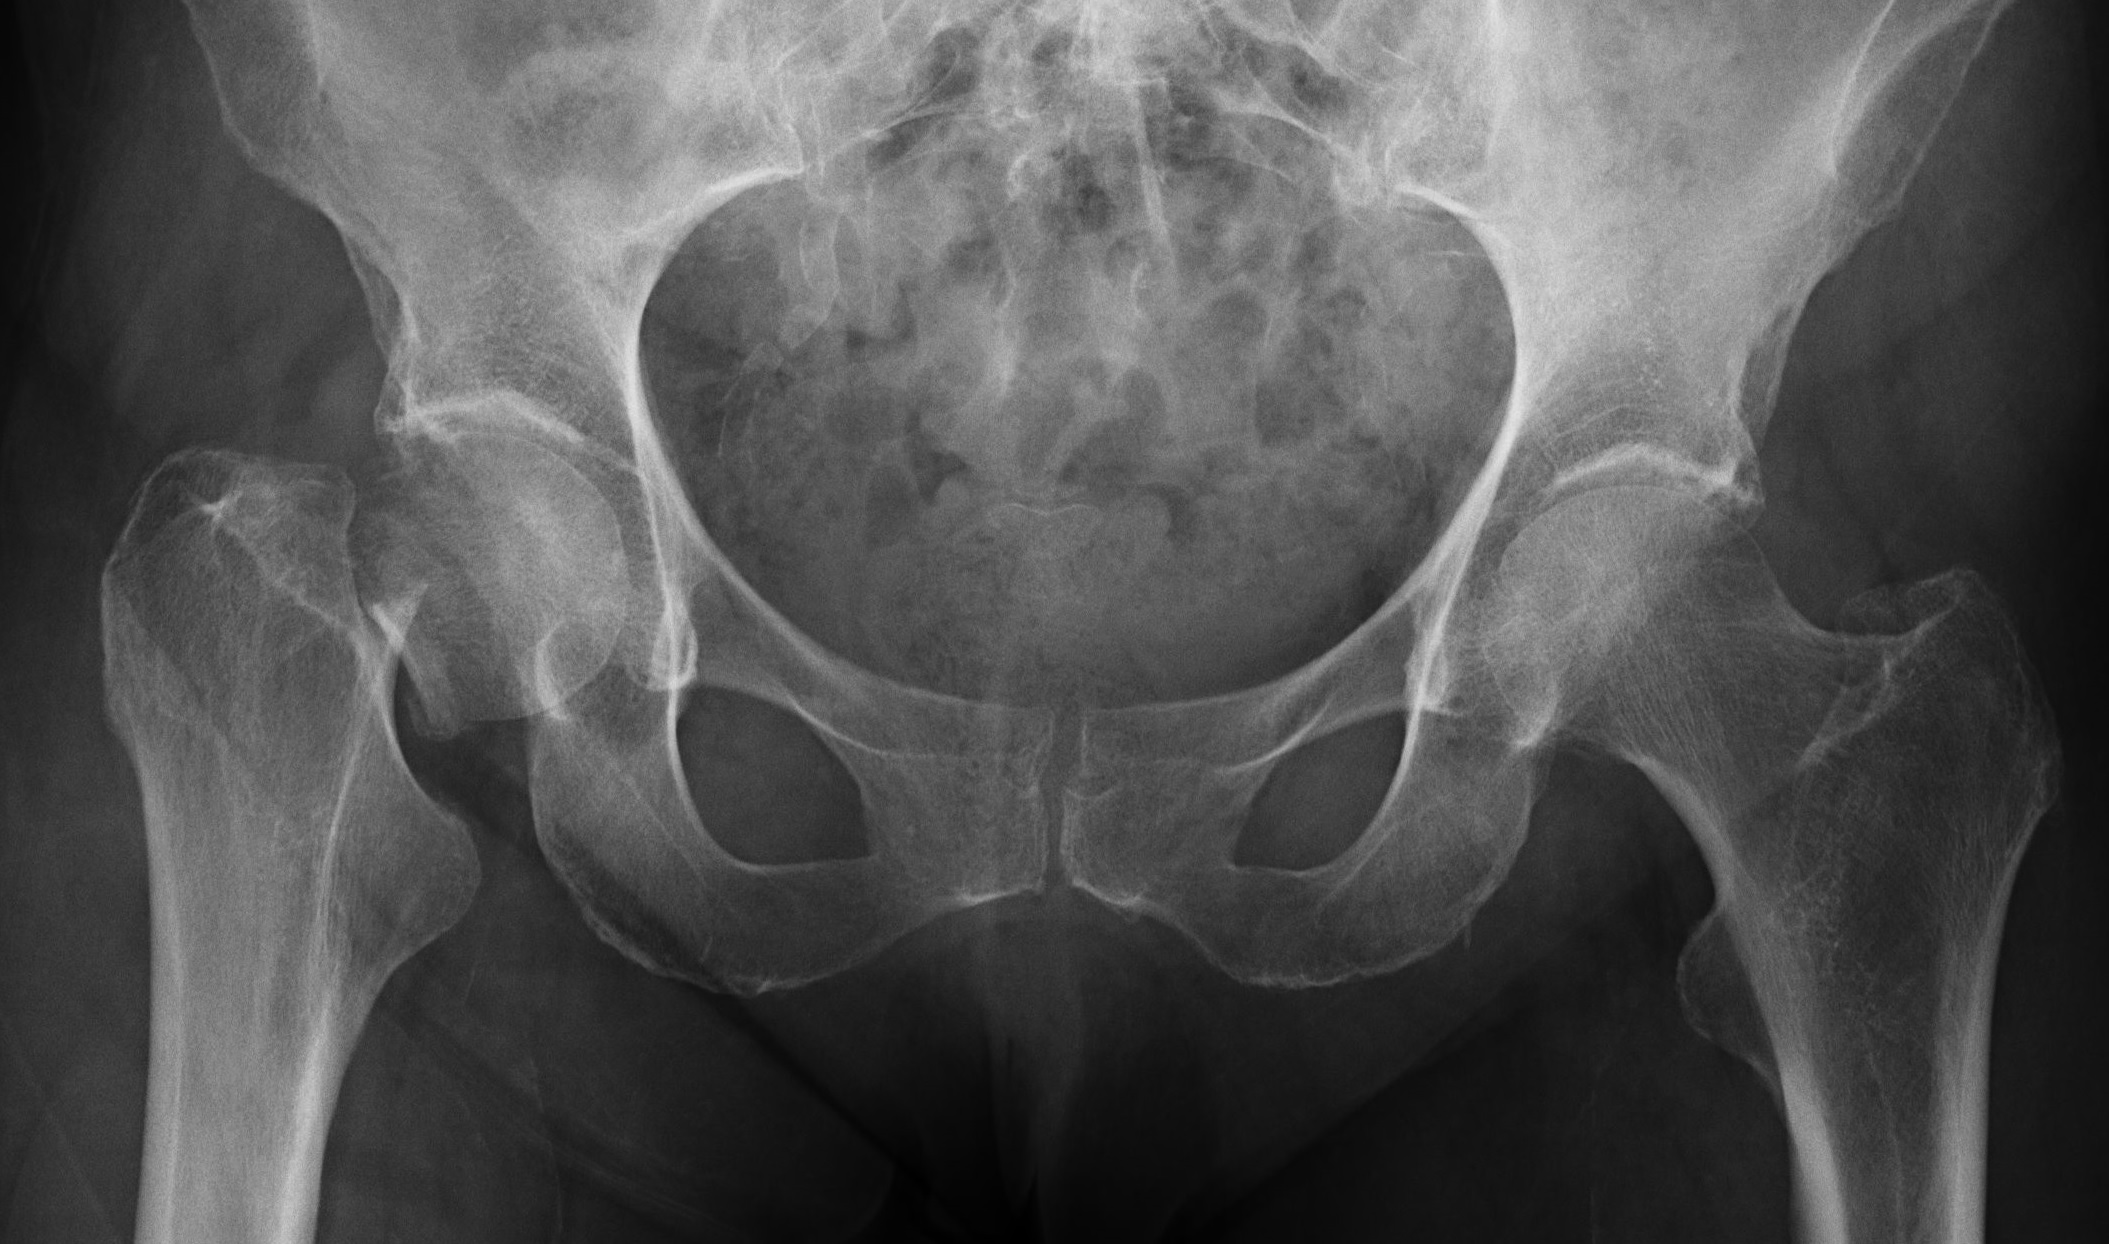 La osteoporosis puede llegar a producir fracturas de hueso